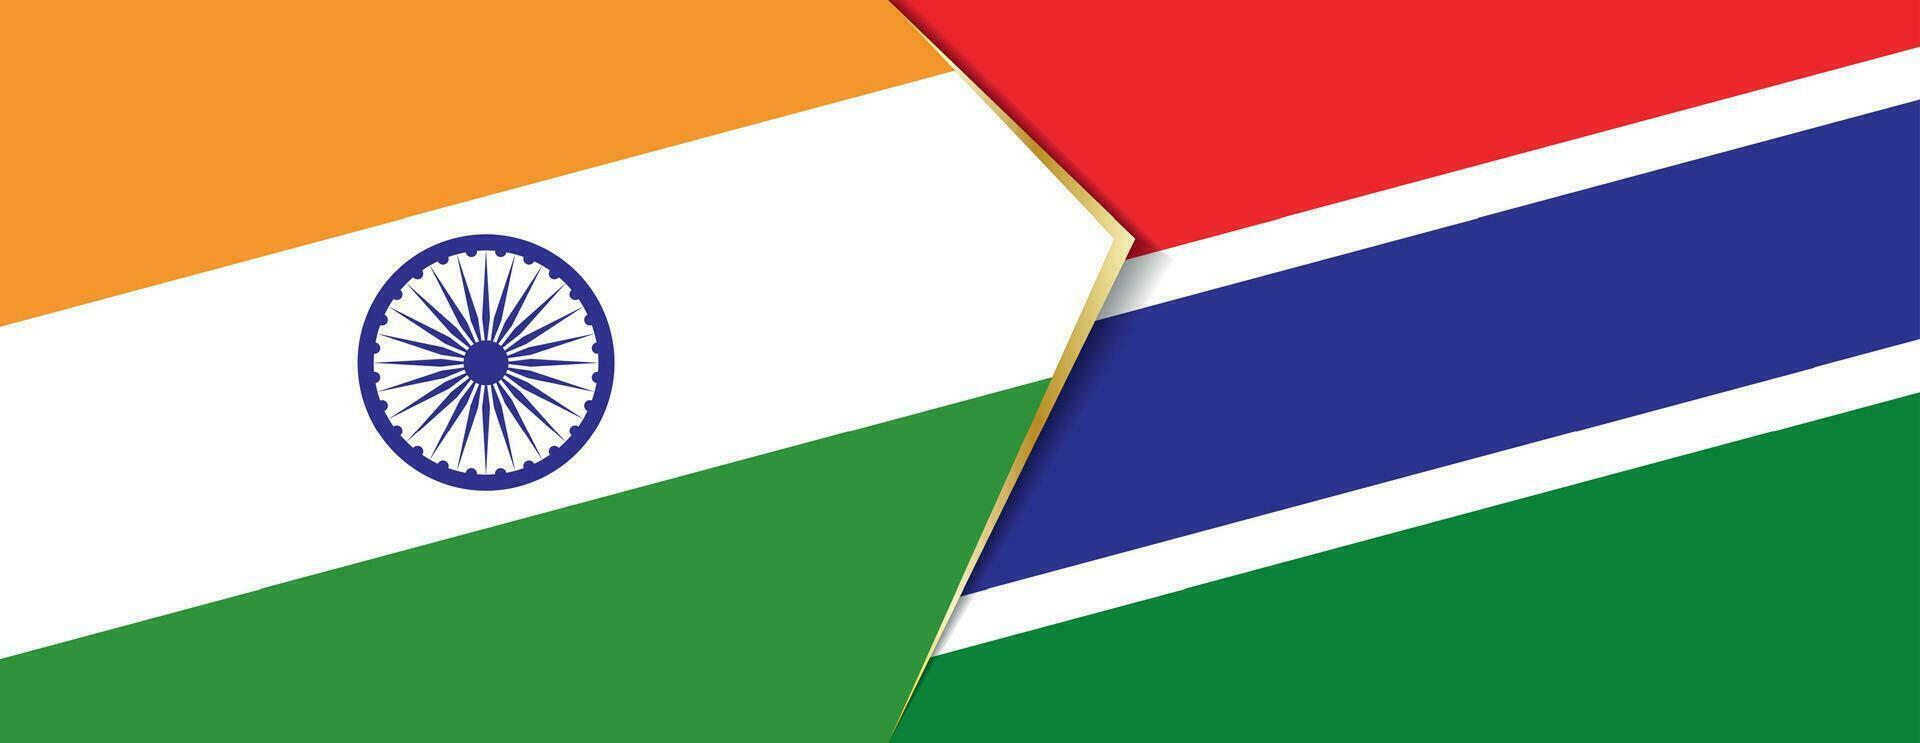 Indien und Gambia Flaggen, zwei Vektor Flaggen.